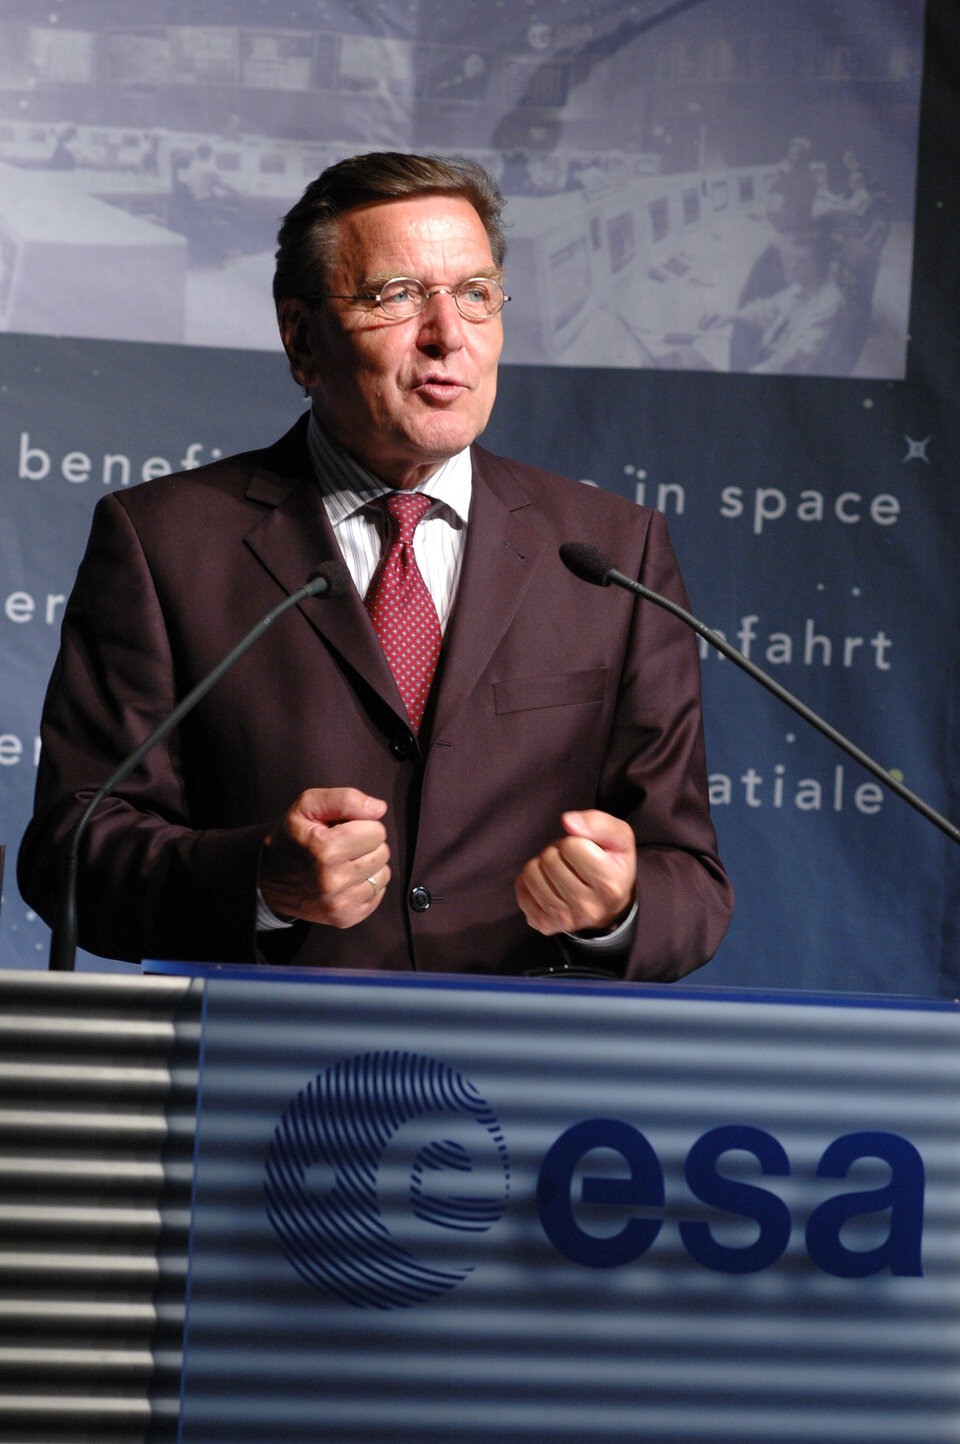 Chancellor Schröder addresses an ESOC audience